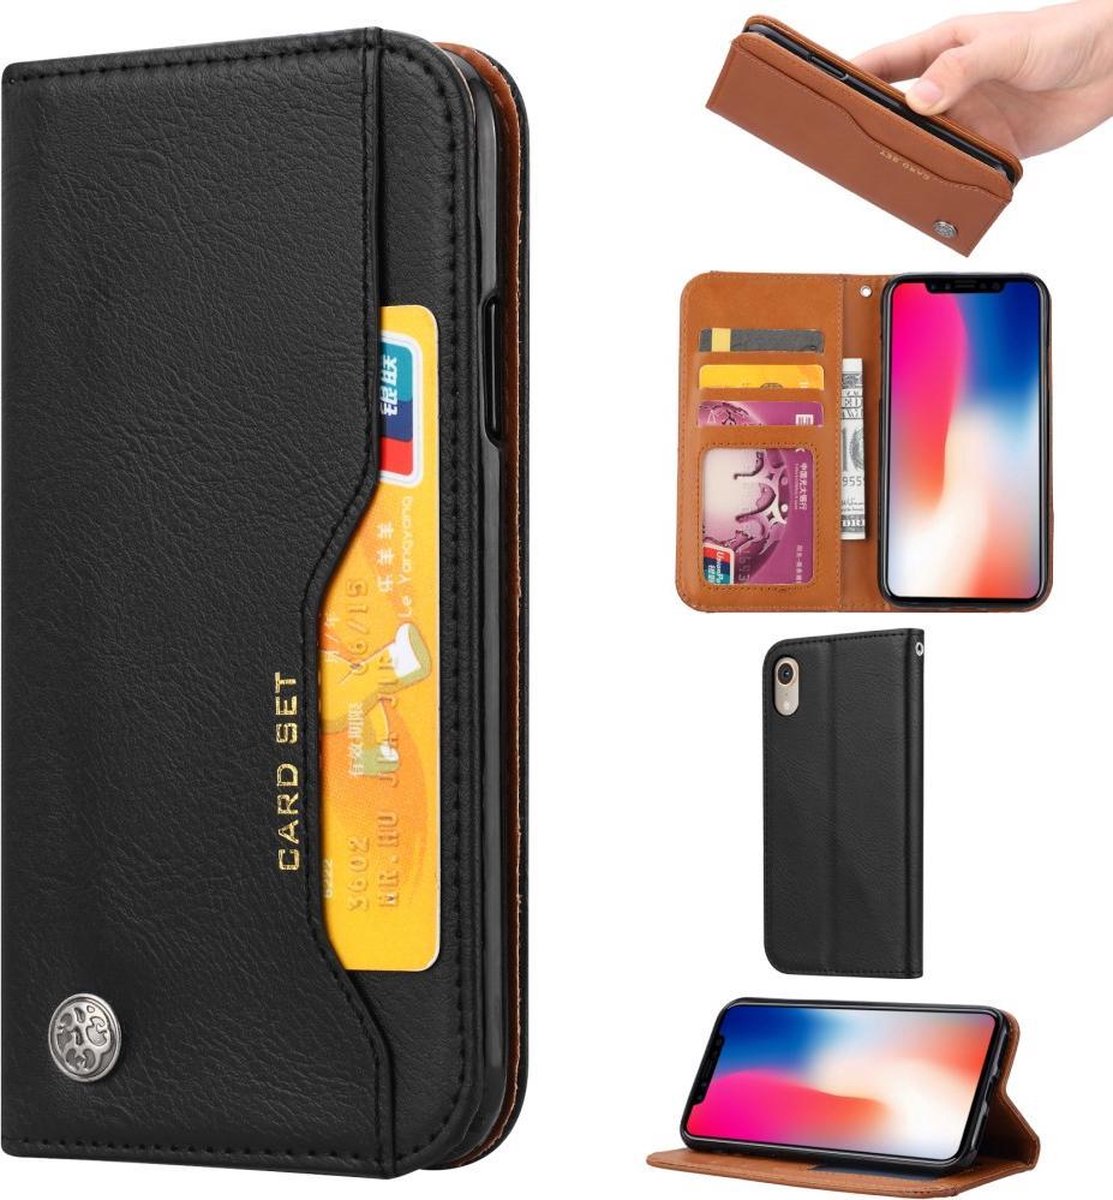 Leren wallet case - iPhone XR - Zwart/Bruin - Card Set